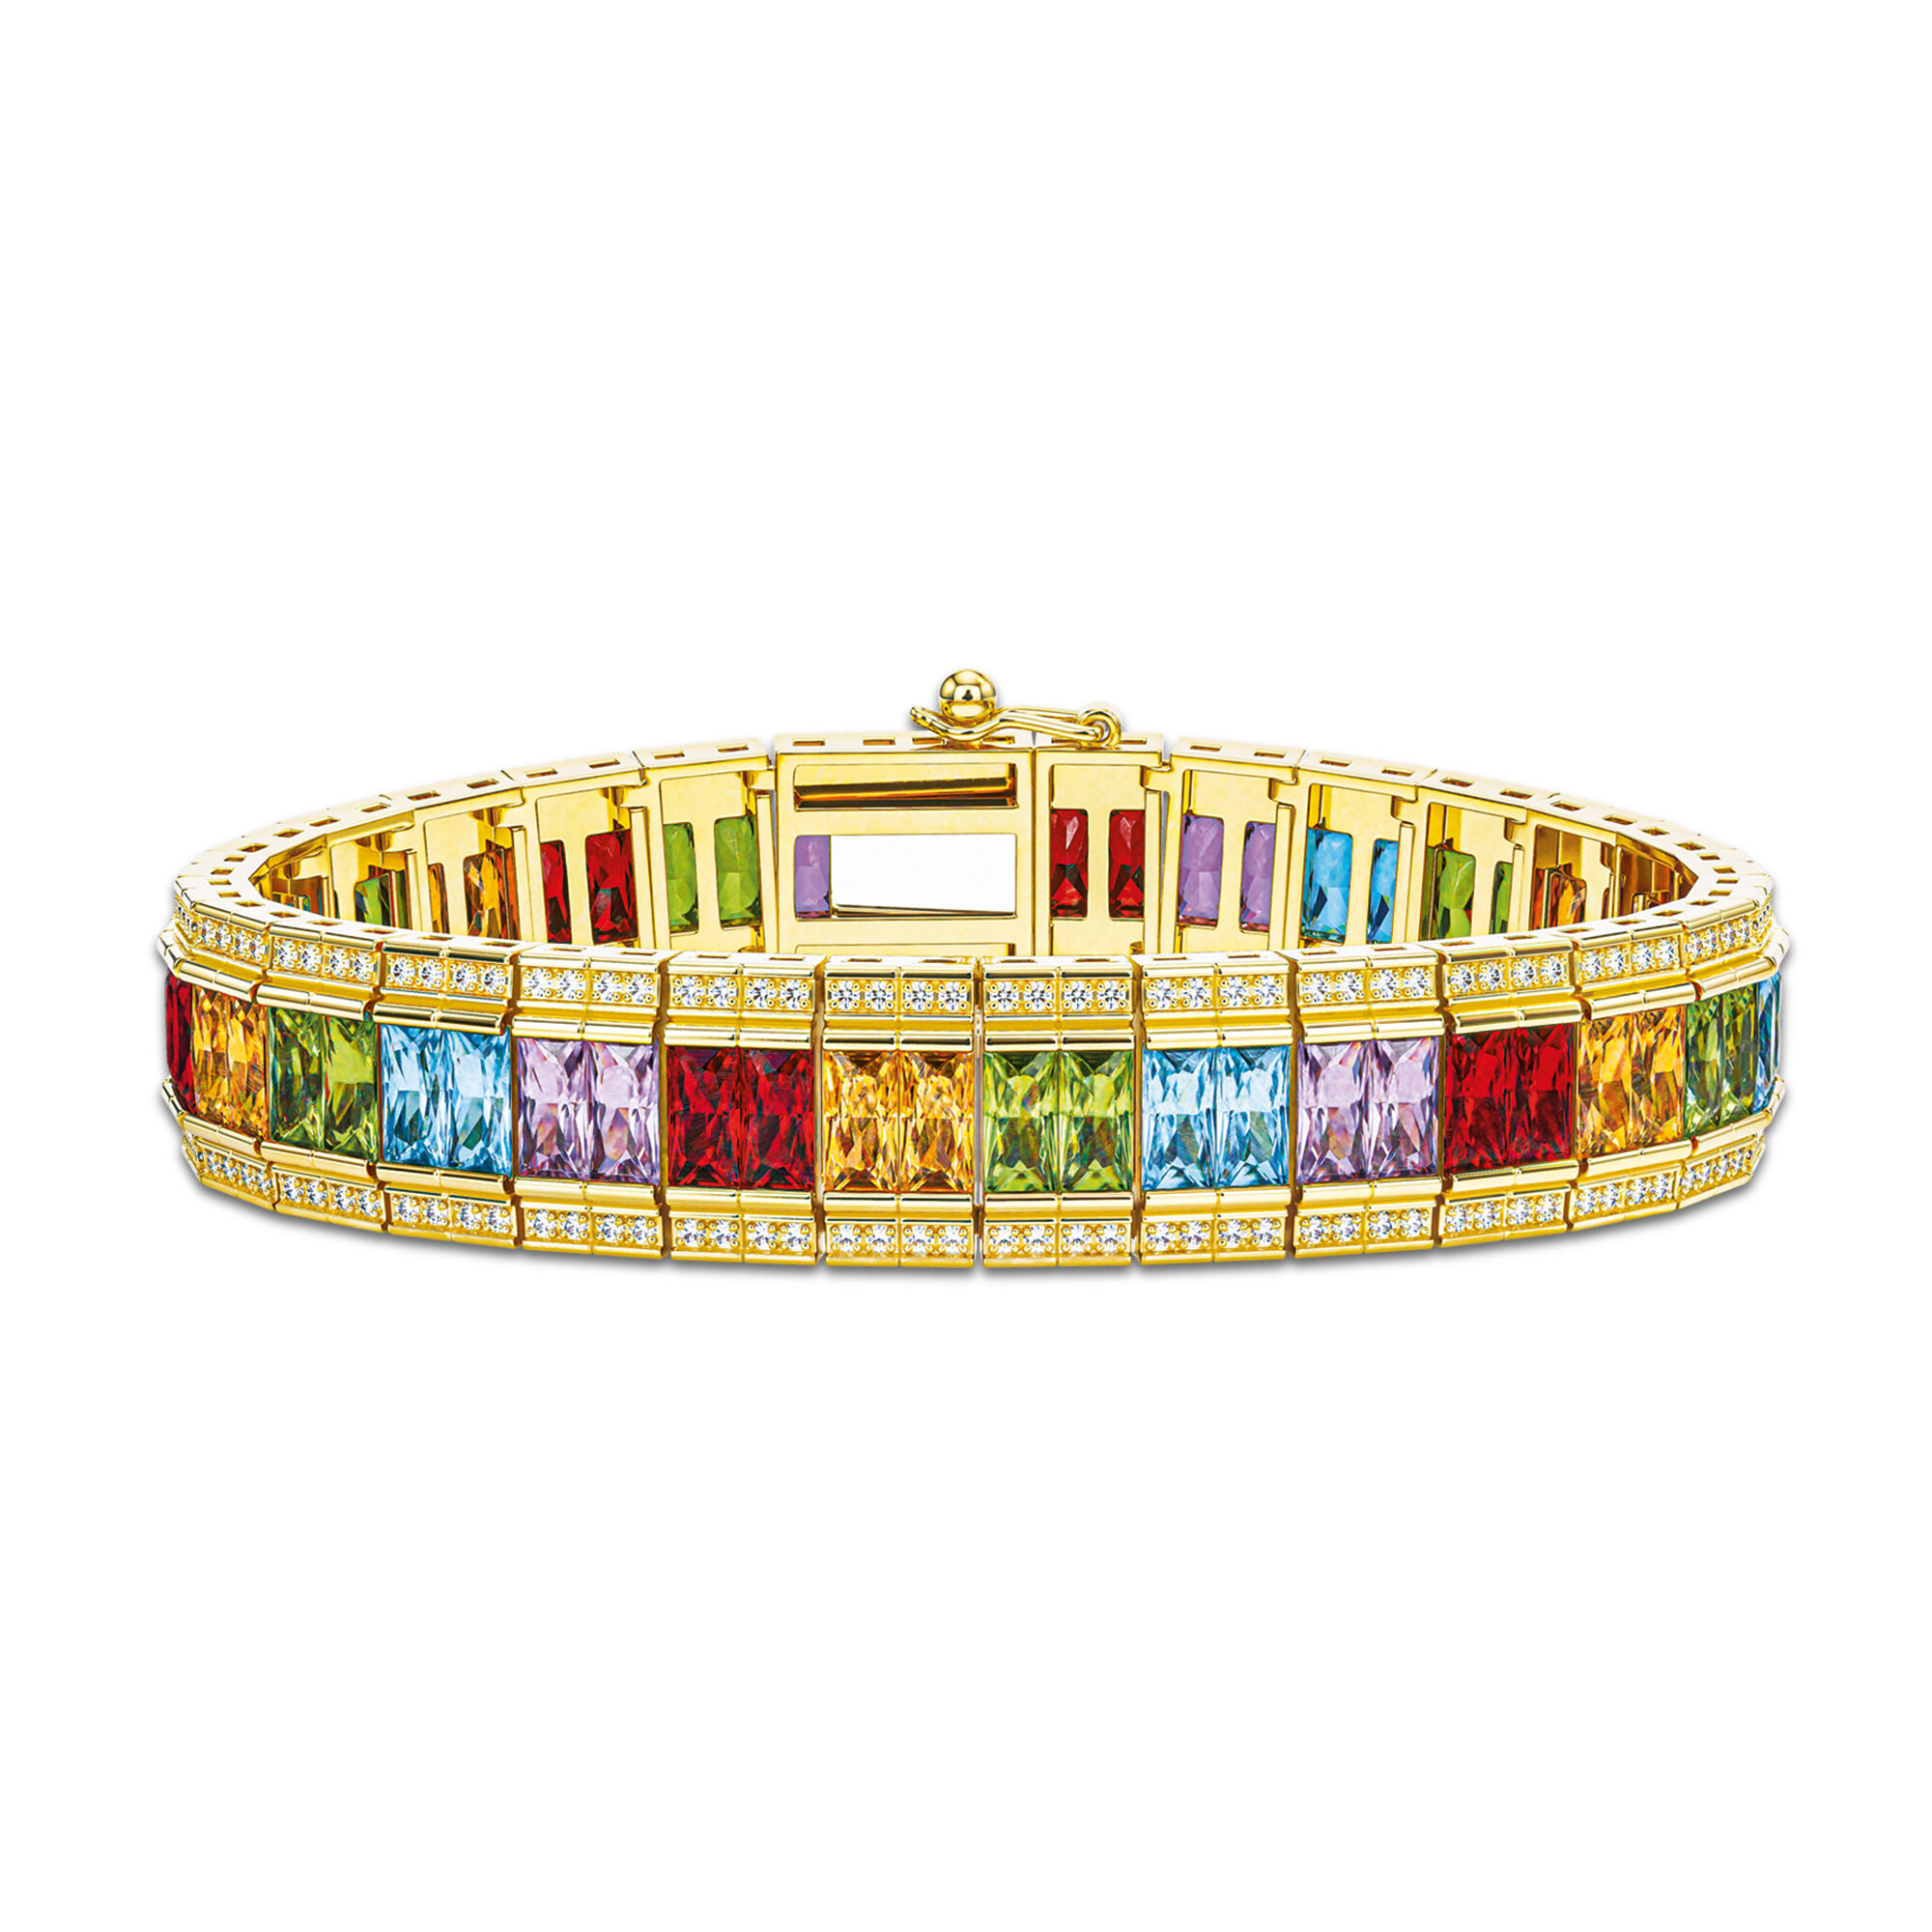 The Rainbow Tennis Bracelet 10290 0016 a main